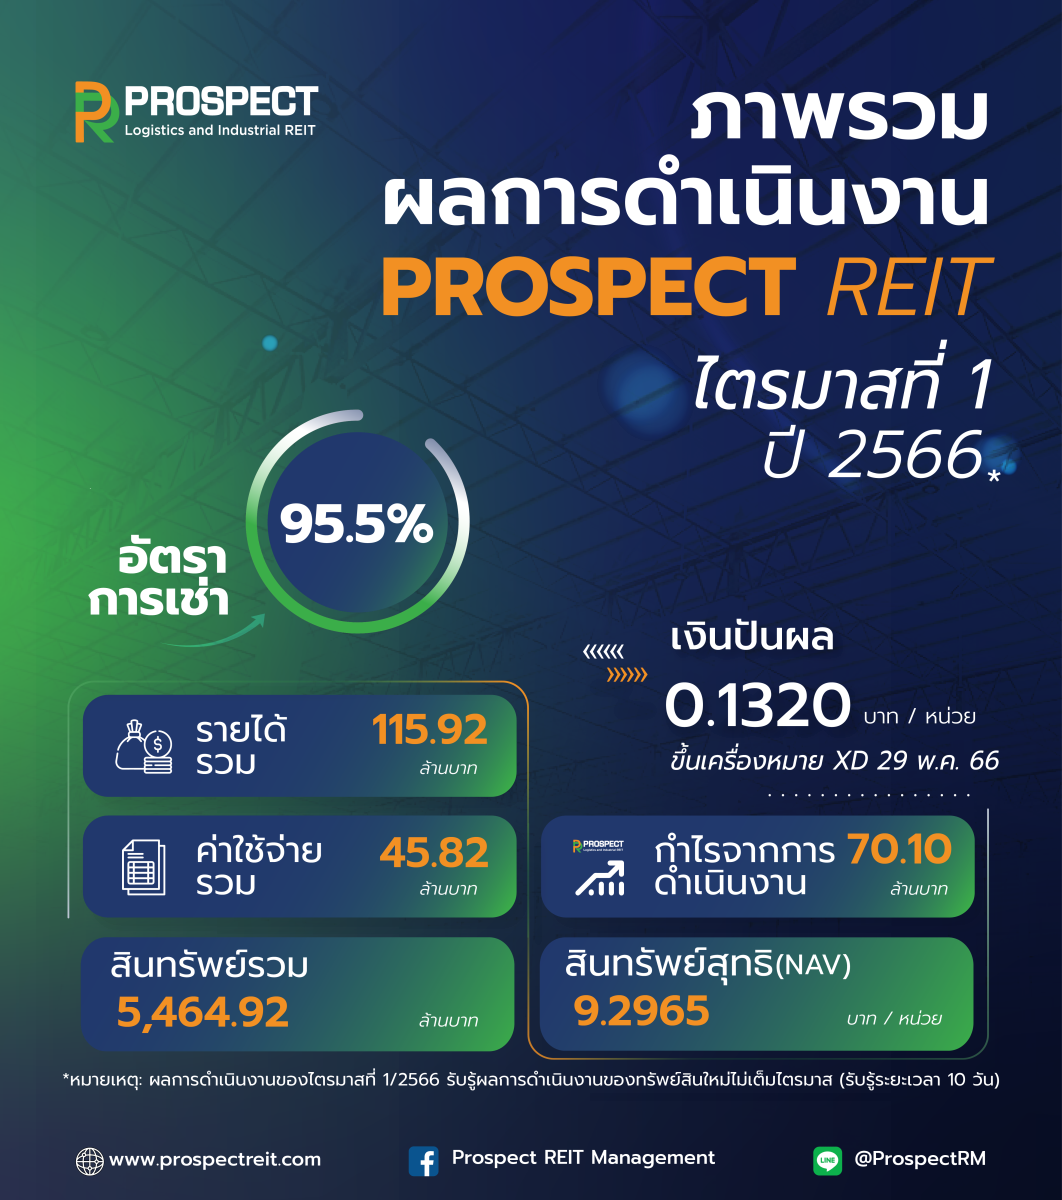 PROSPECT REIT เปิดไตรมาส 1/2566 ด้วยรายได้ 115.92 ล้านบาท โชว์ศักยภาพทรัพย์สินใหม่ ผู้เช่าเต็ม 100% แนวโน้มสดใสรับเศรษฐกิจฟื้น